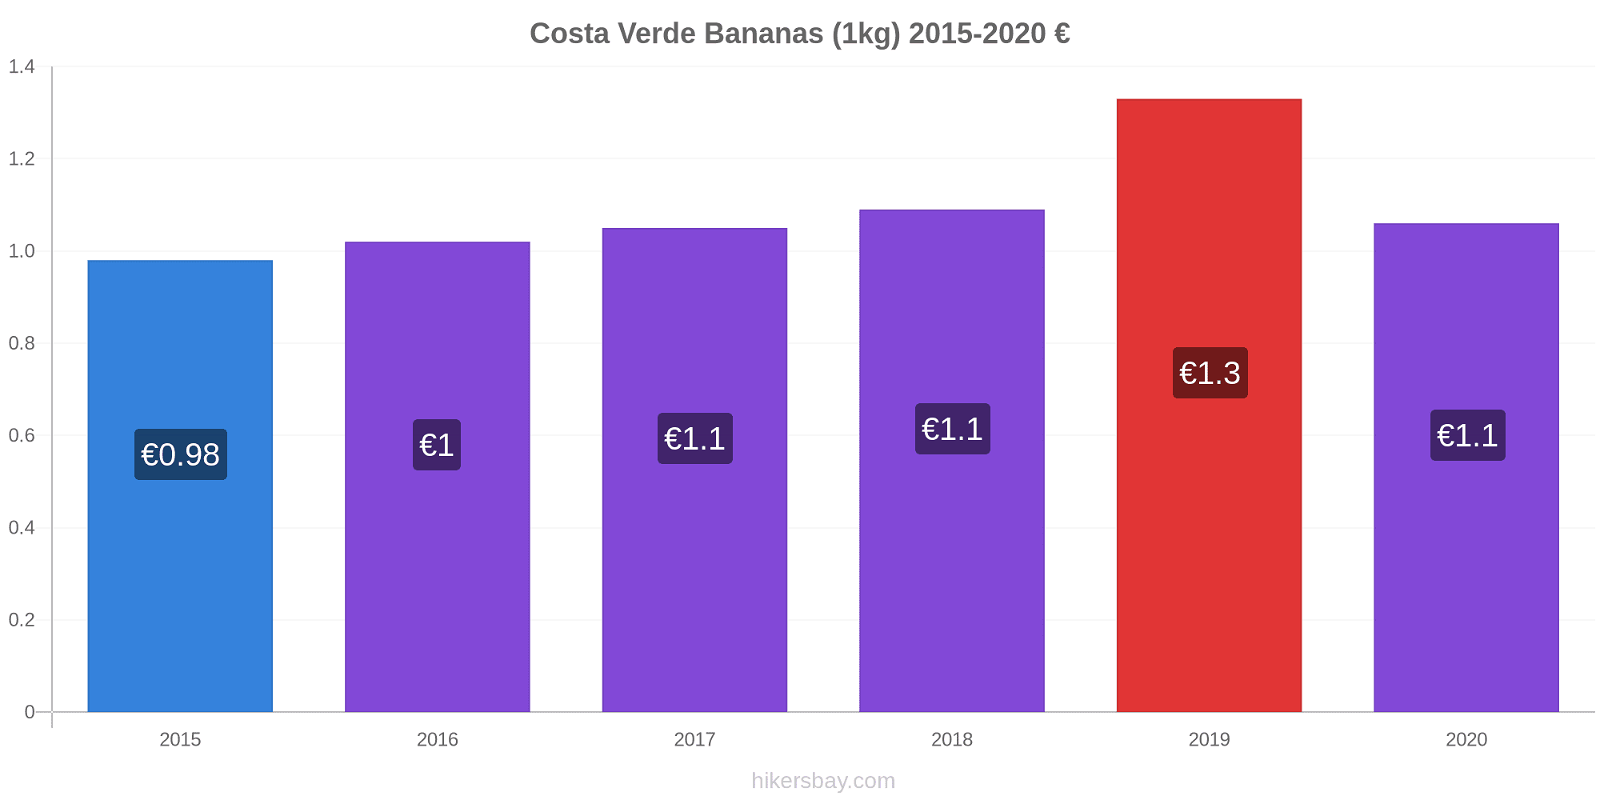 Costa Verde variação de preço Banana (1kg) hikersbay.com